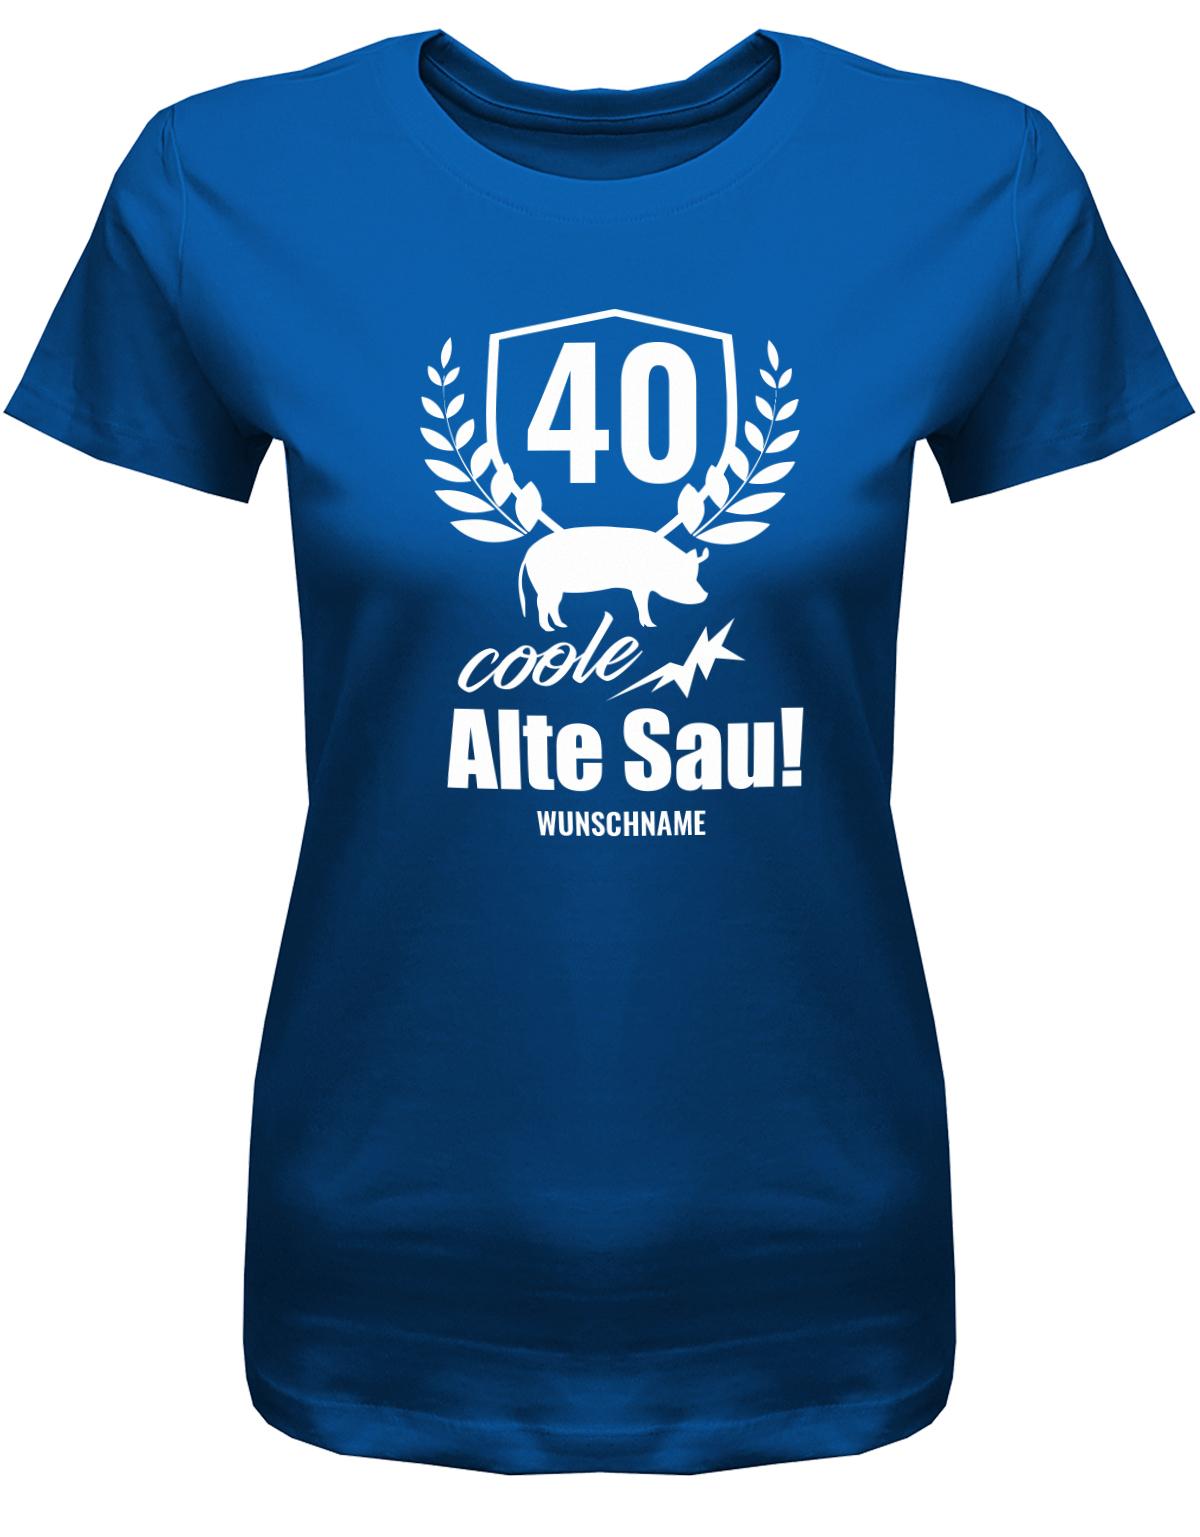 Lustiges T-Shirt zum 40. Geburtstag für die Frau Bedruckt mit 40 coole alte Sau personalisiert mit Name. Royalblau